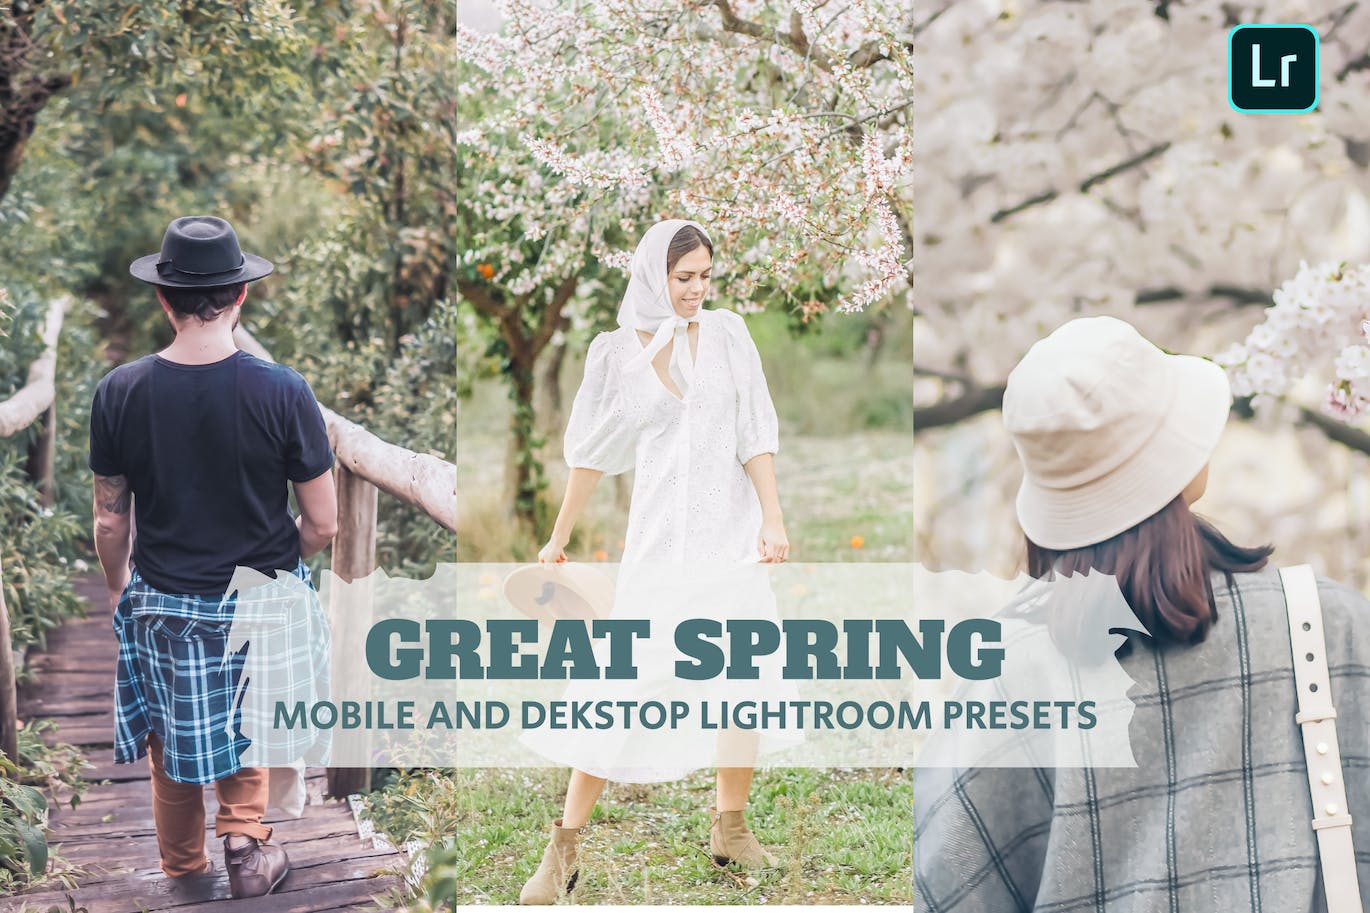 春天摄影Lightroom调色预设下载 Great Spring Lightroom Presets Dekstop and Mobile